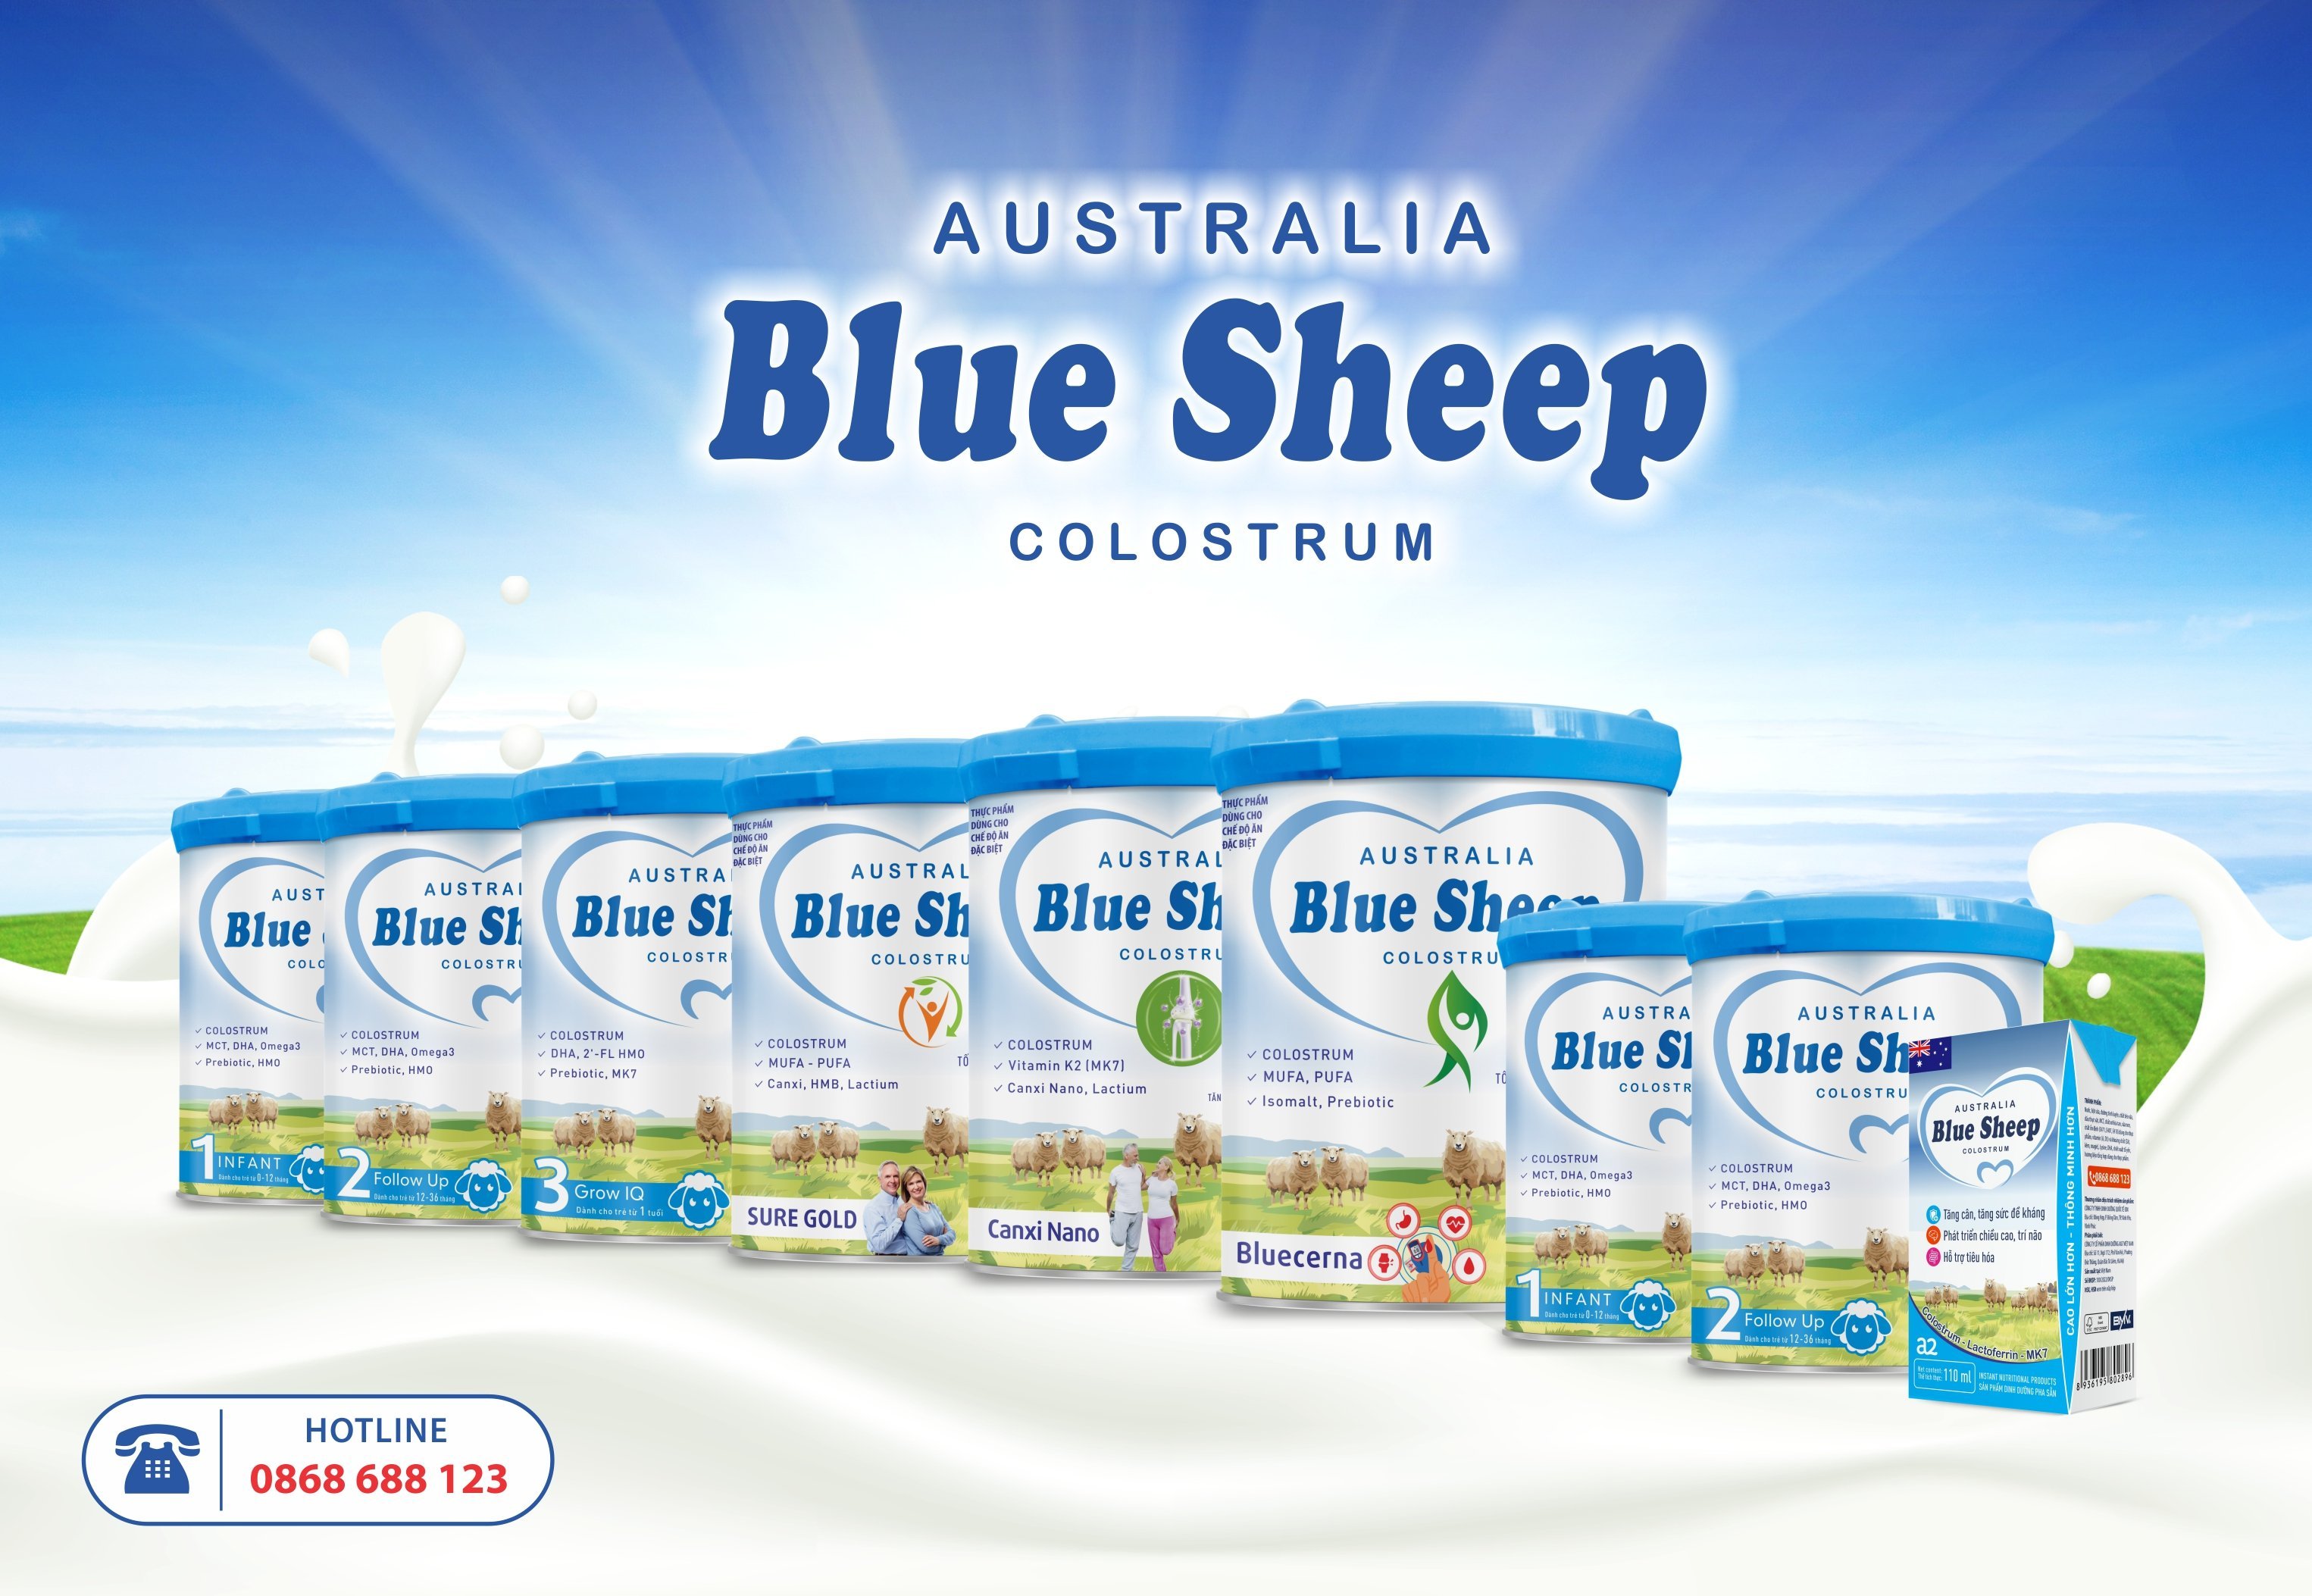 BLUE SHEEP COLOSTRUM